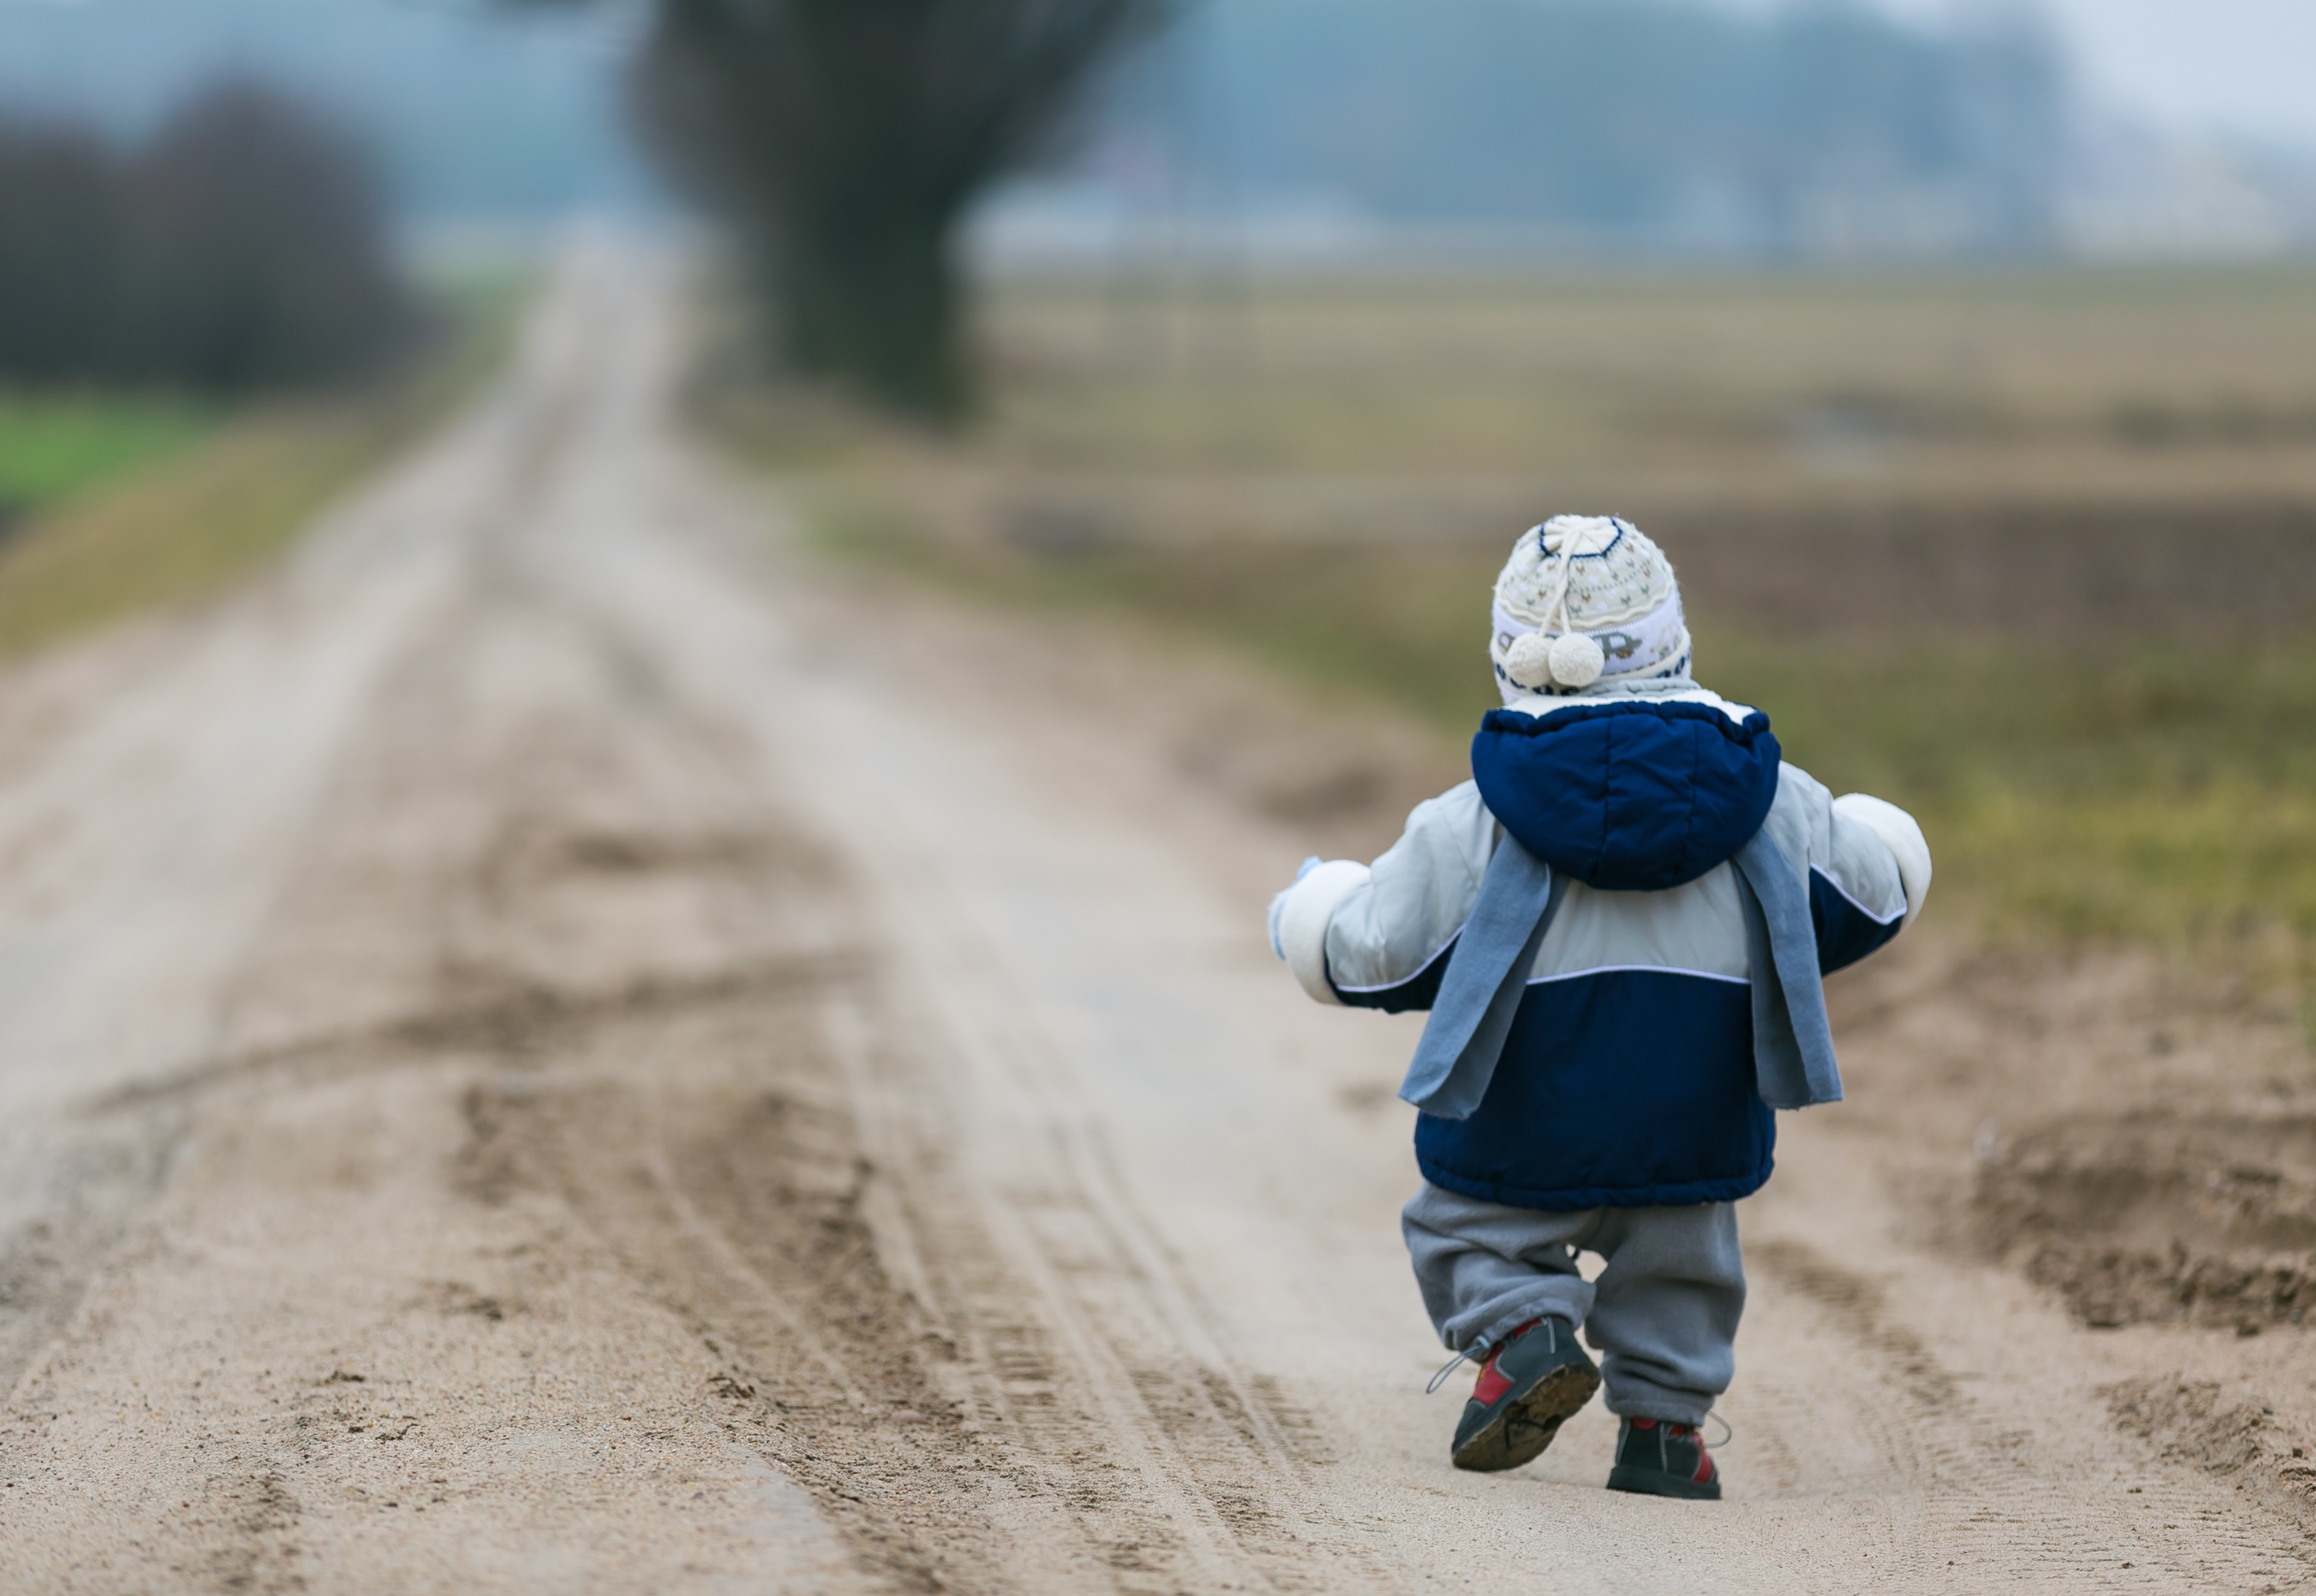 Toddler walking on dirt road